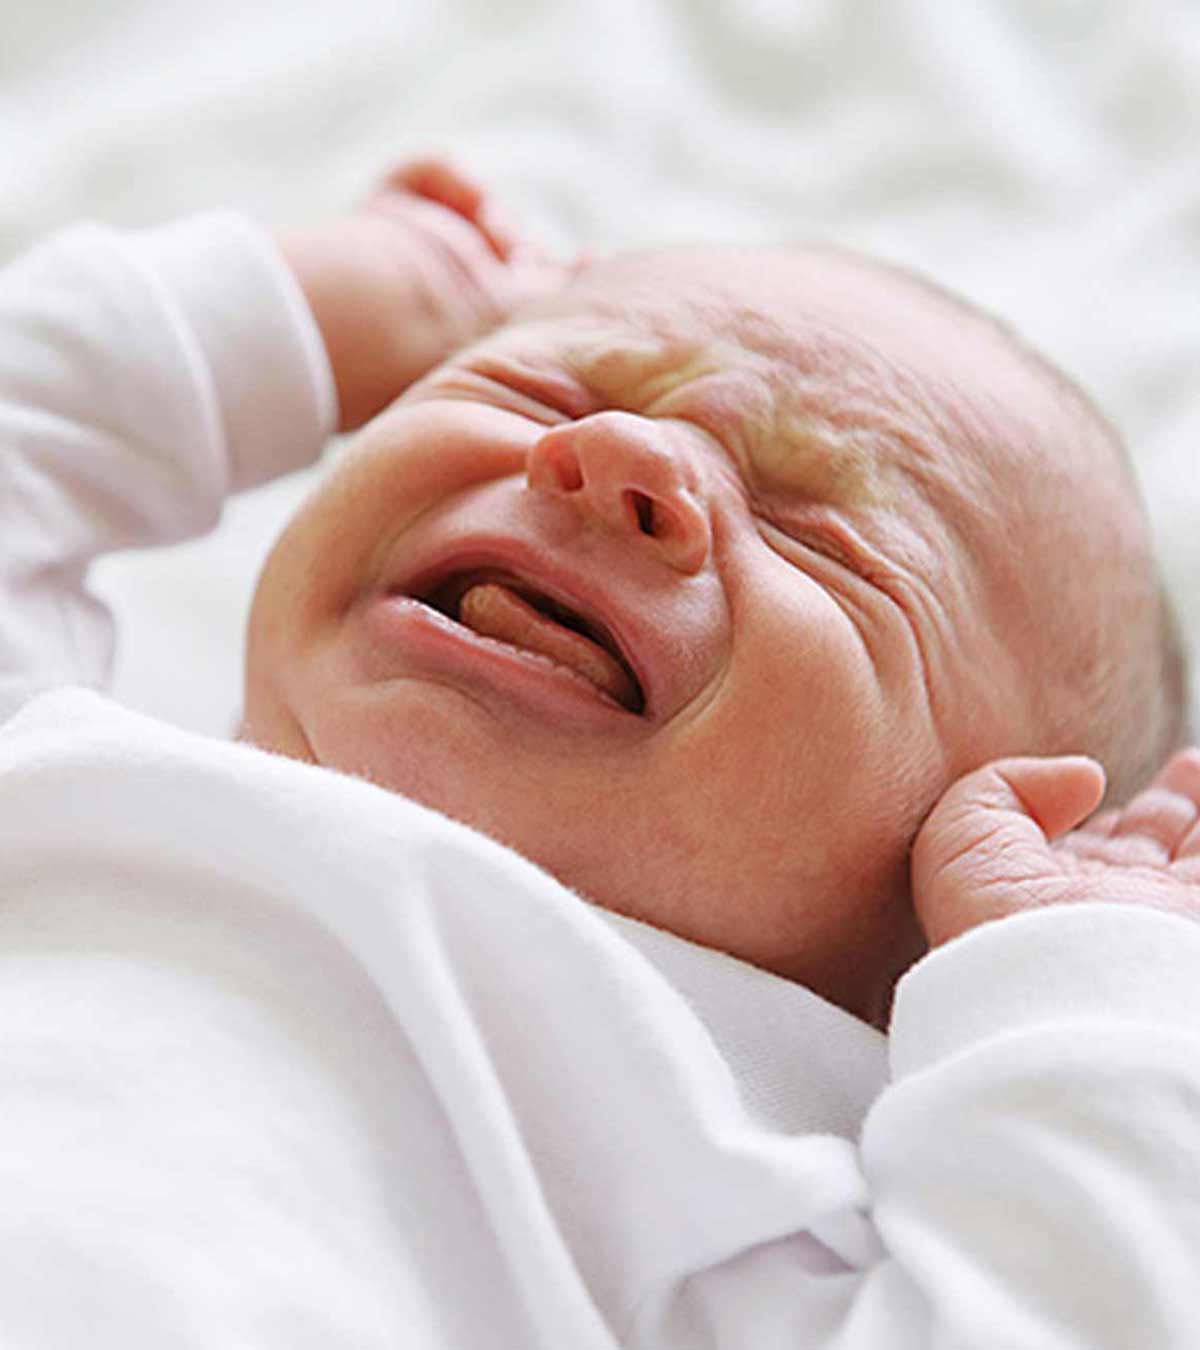 婴儿气体:症状、原因、治疗和预防